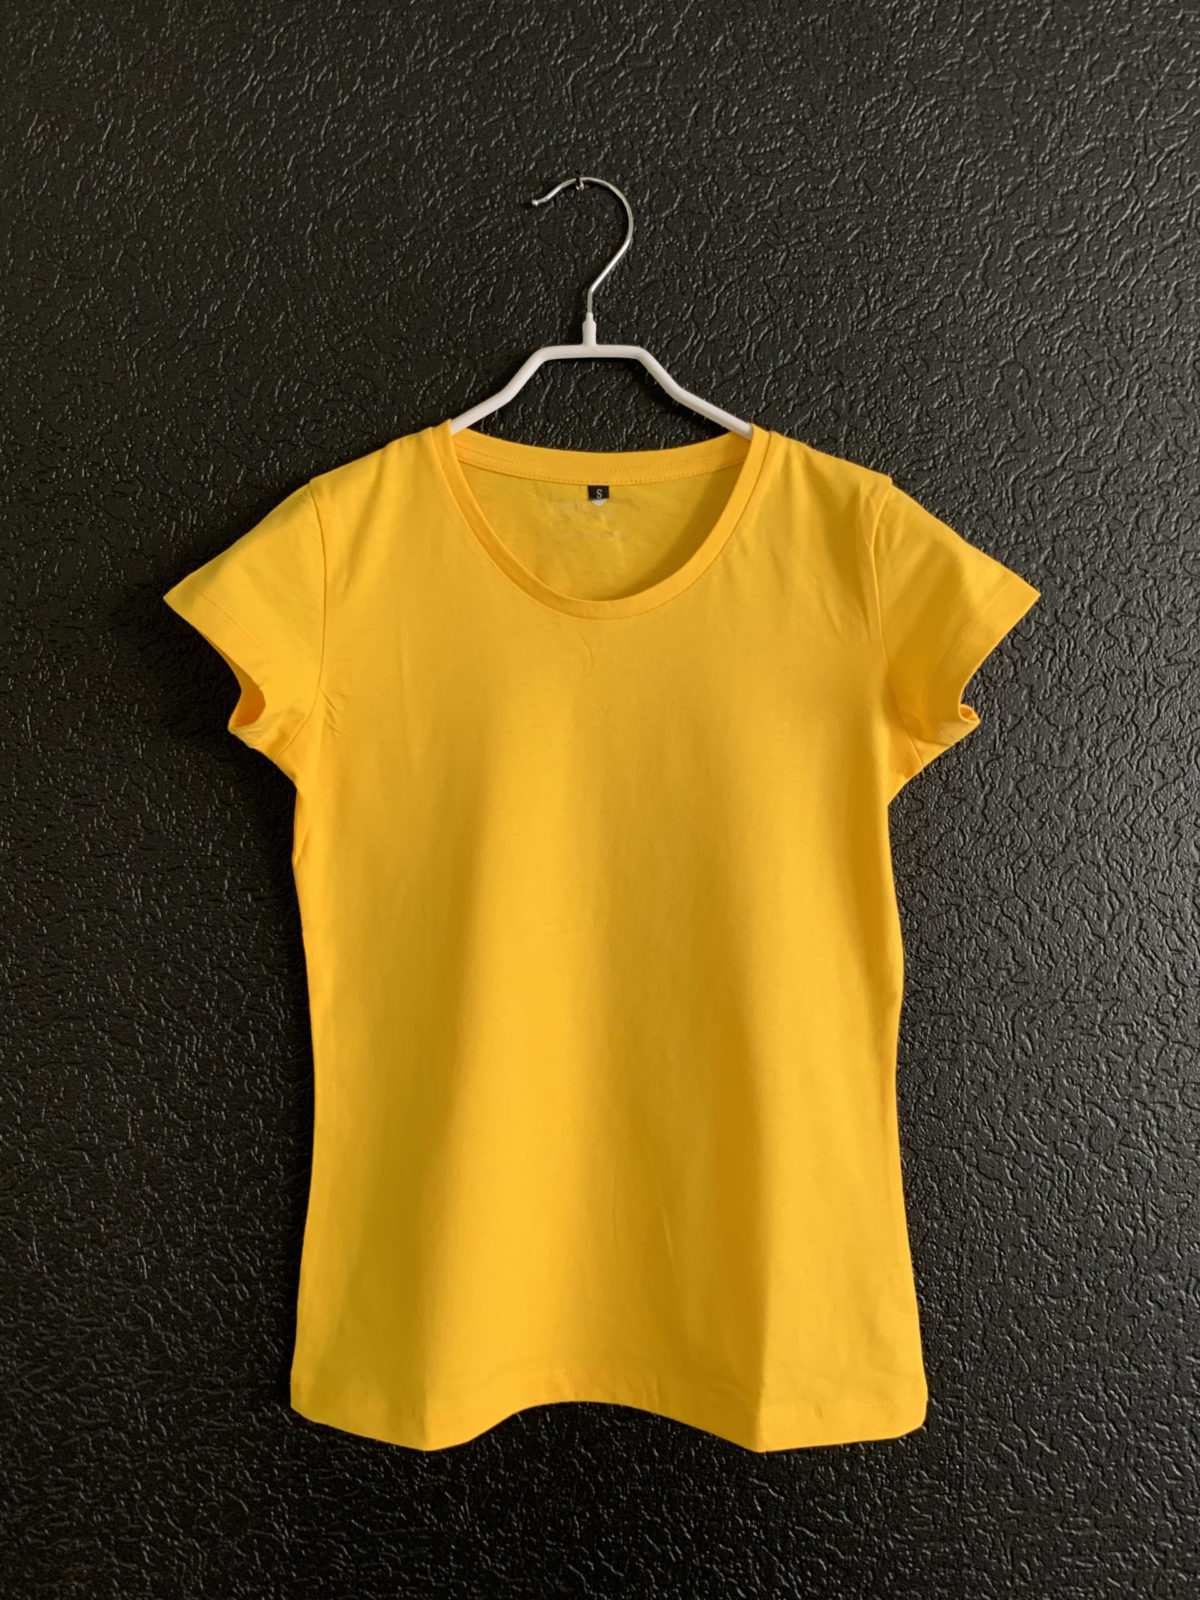 Купить футболку женскую желтую с вашим логотипом на заказ в Москве